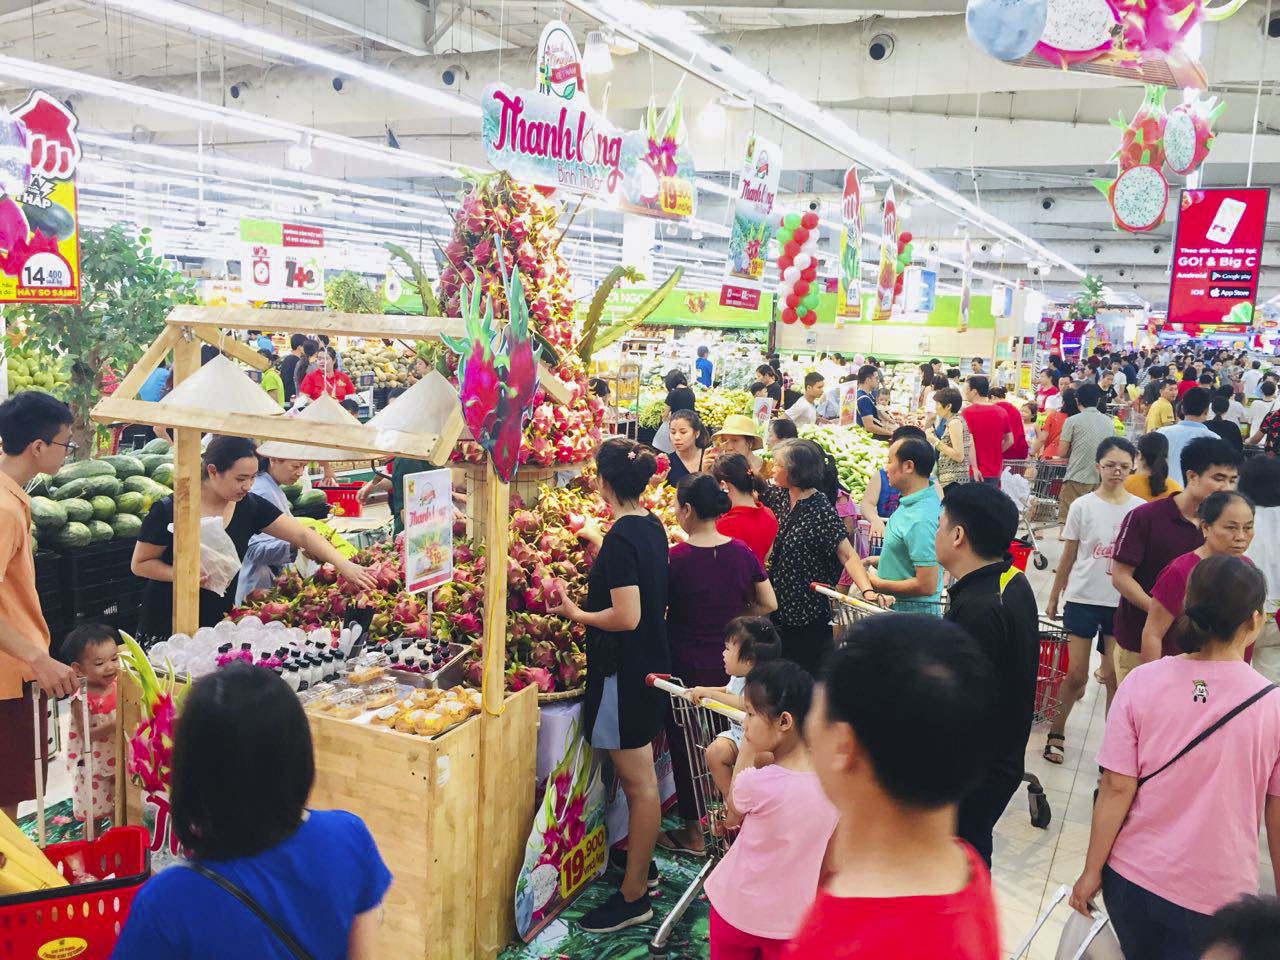 Tuần lễ Thanh long Bình Thuận tại hệ thống siêu thị Big C và GO! của Central Group Việt Nam từ ngày 7/7-14/7/2019